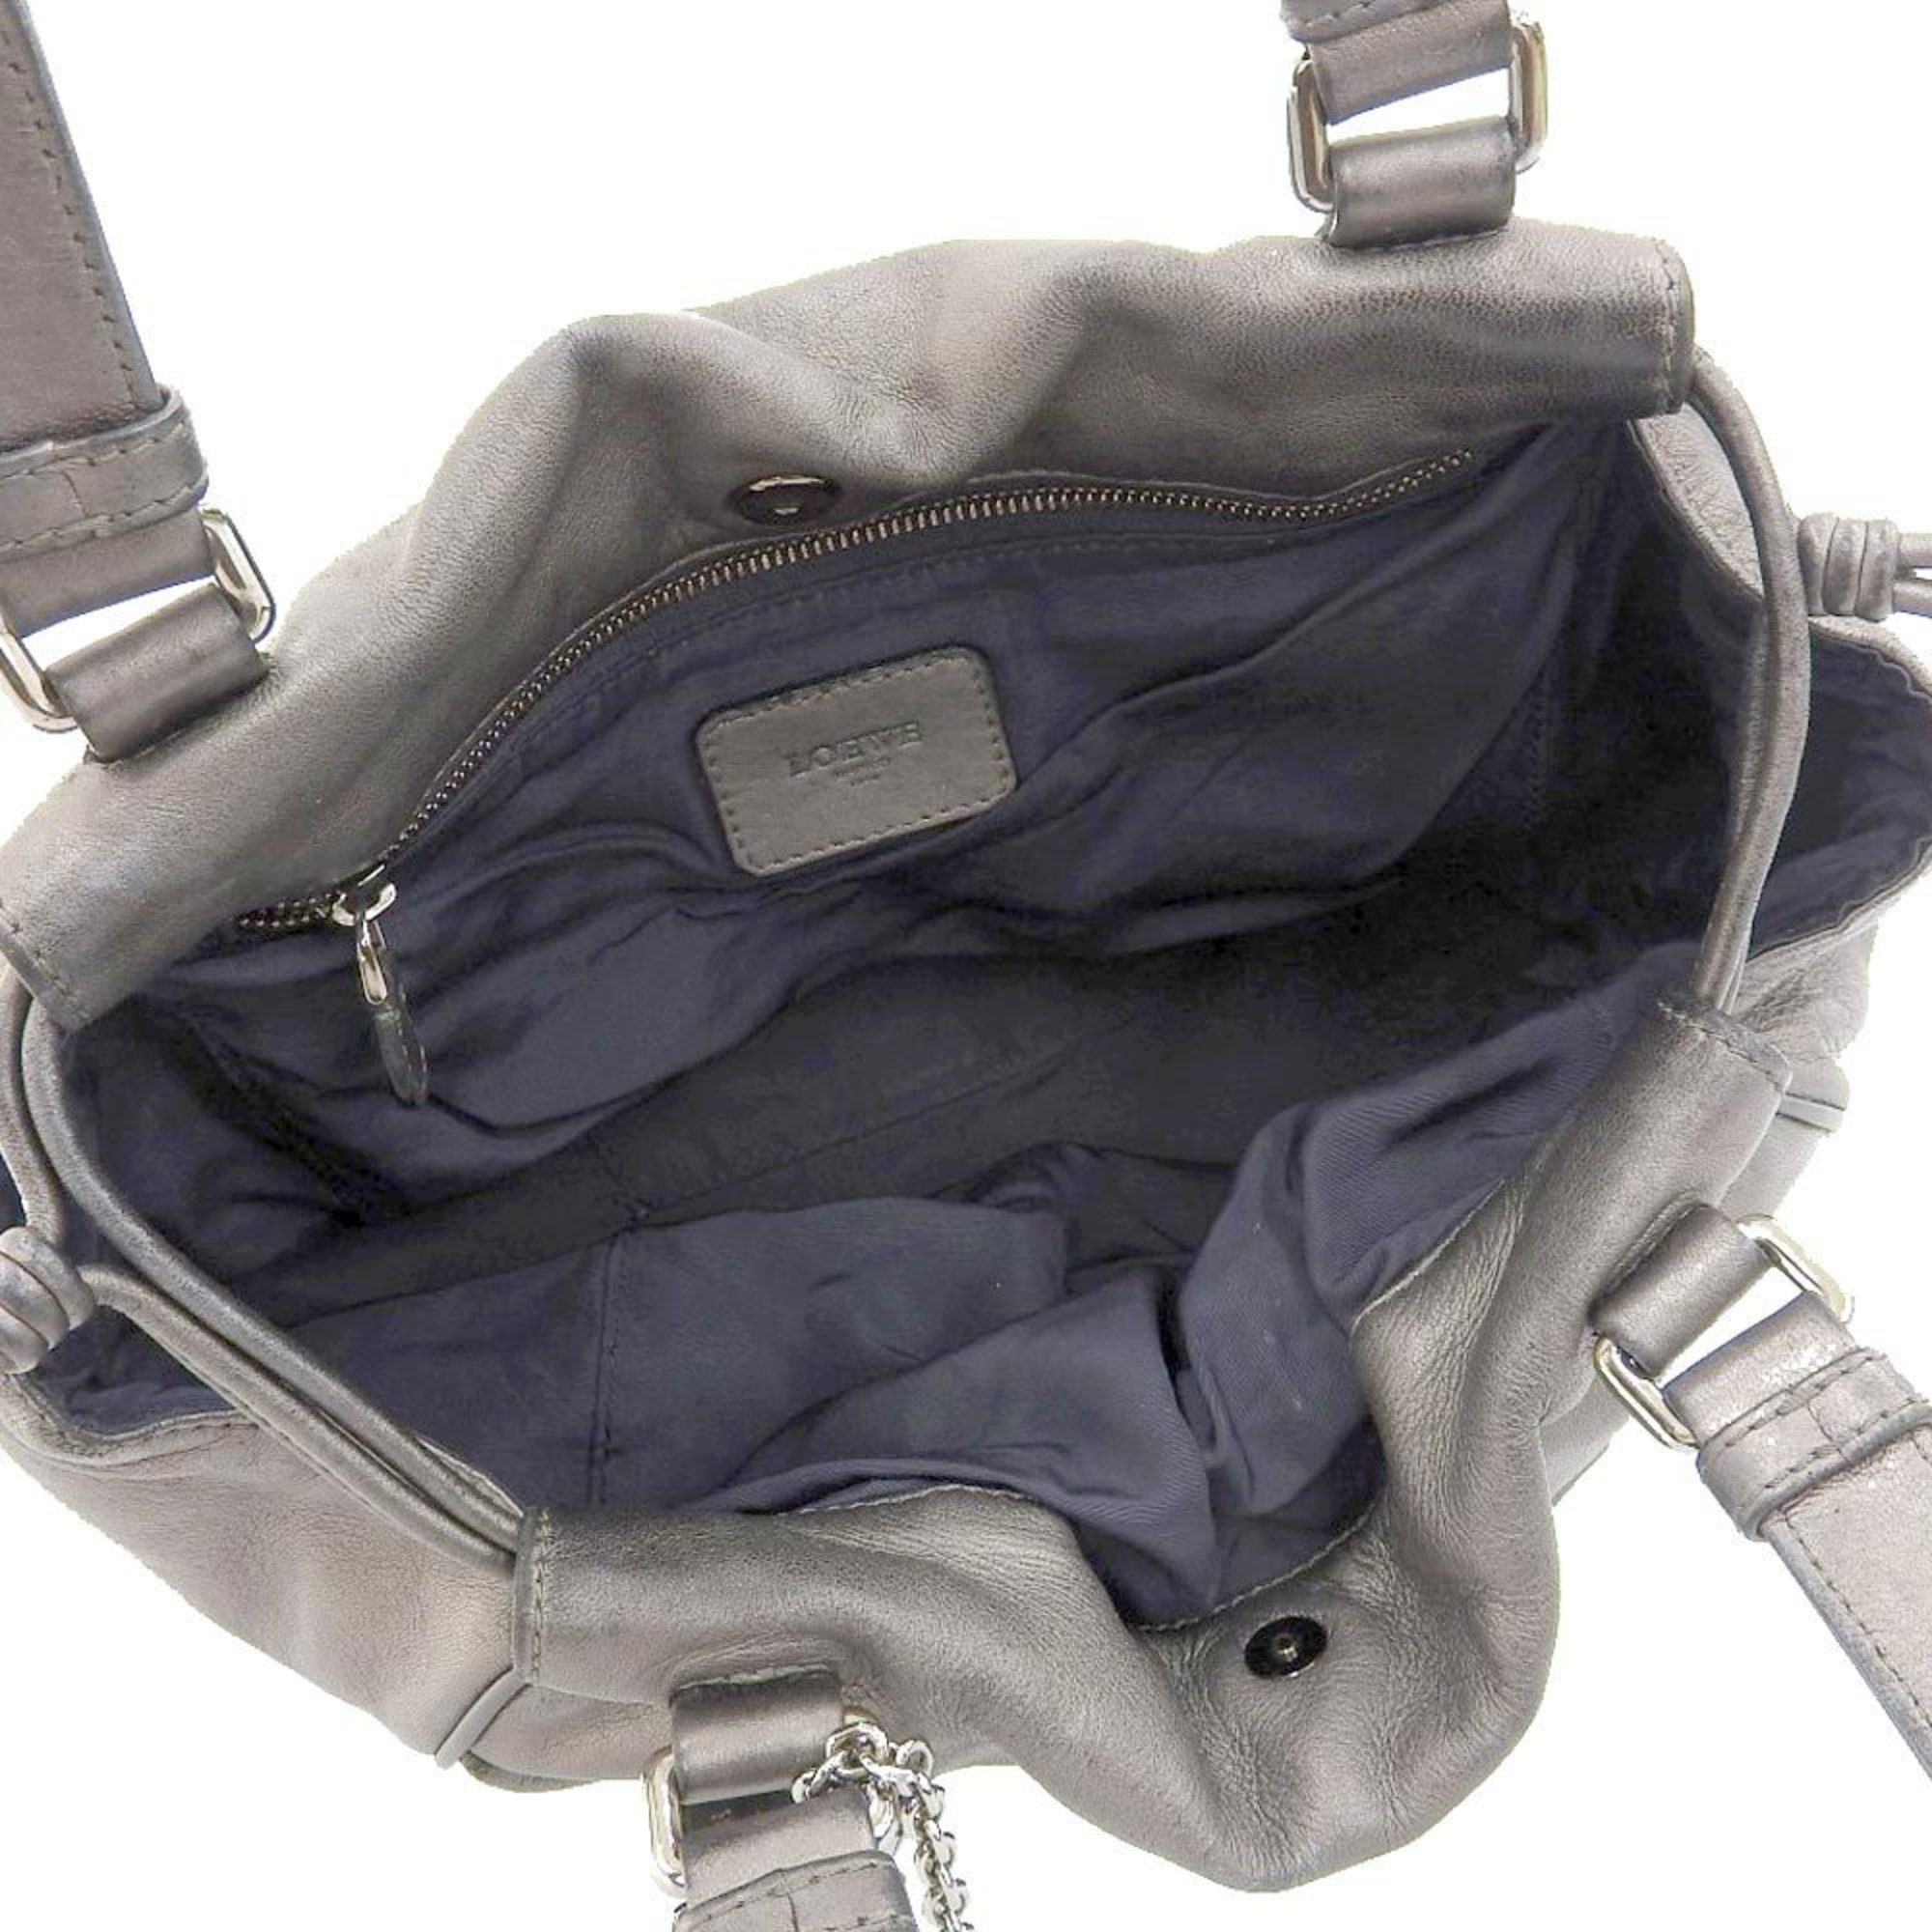 LOEWE Anagram Handbag Leather Metallic Gray